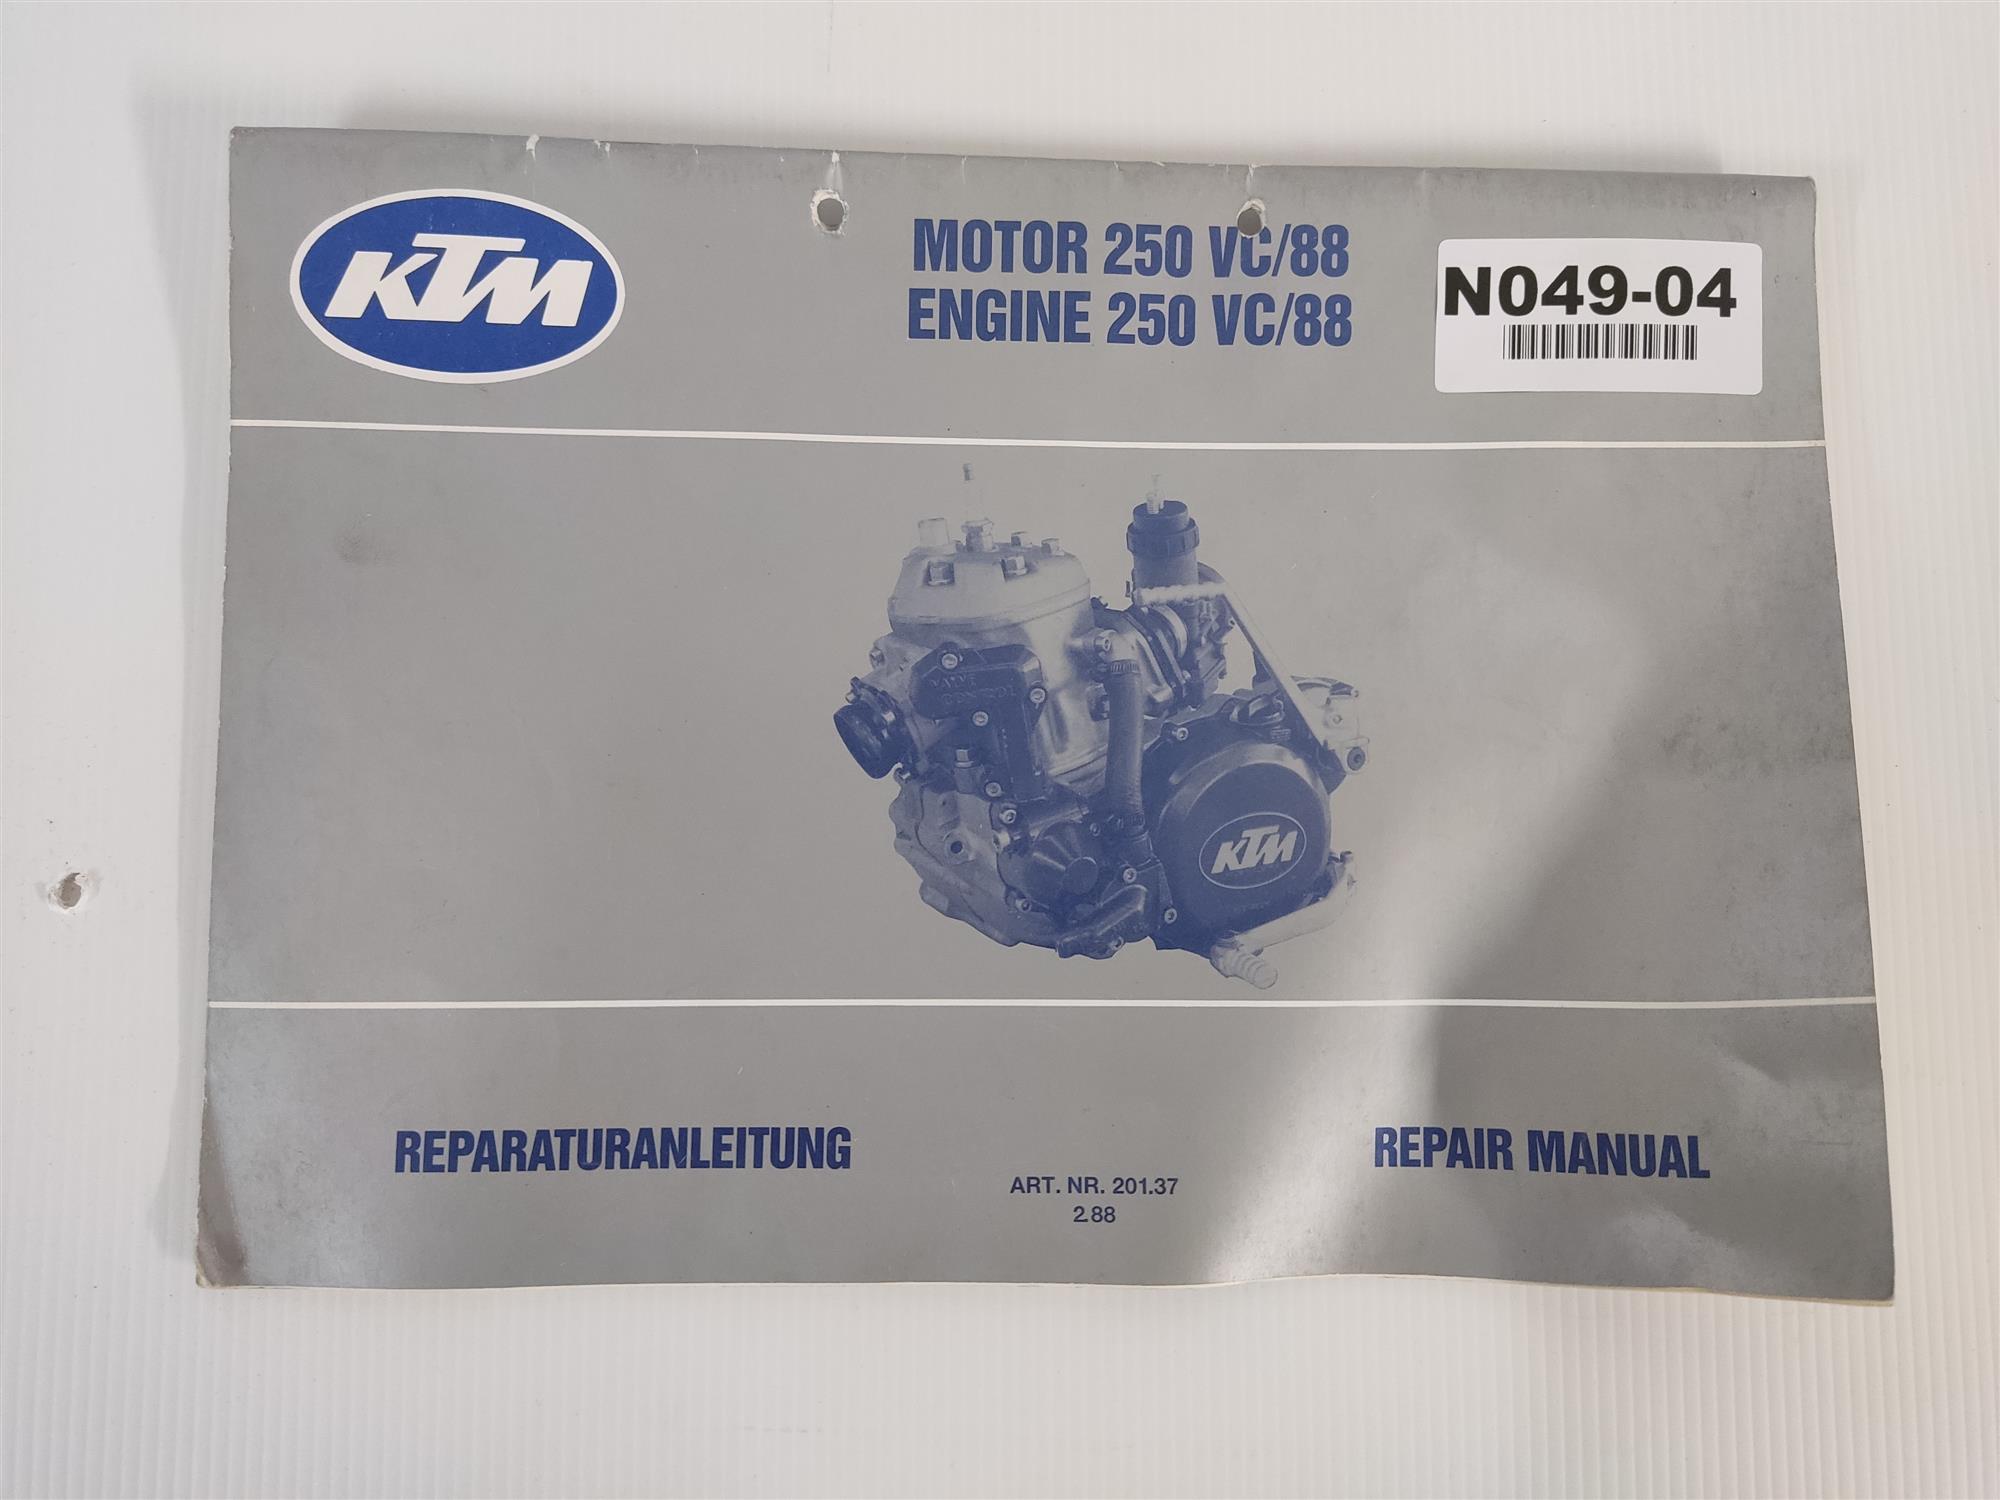 KTM 250 VC/88 Motor Reparaturanleitung 201.372.88